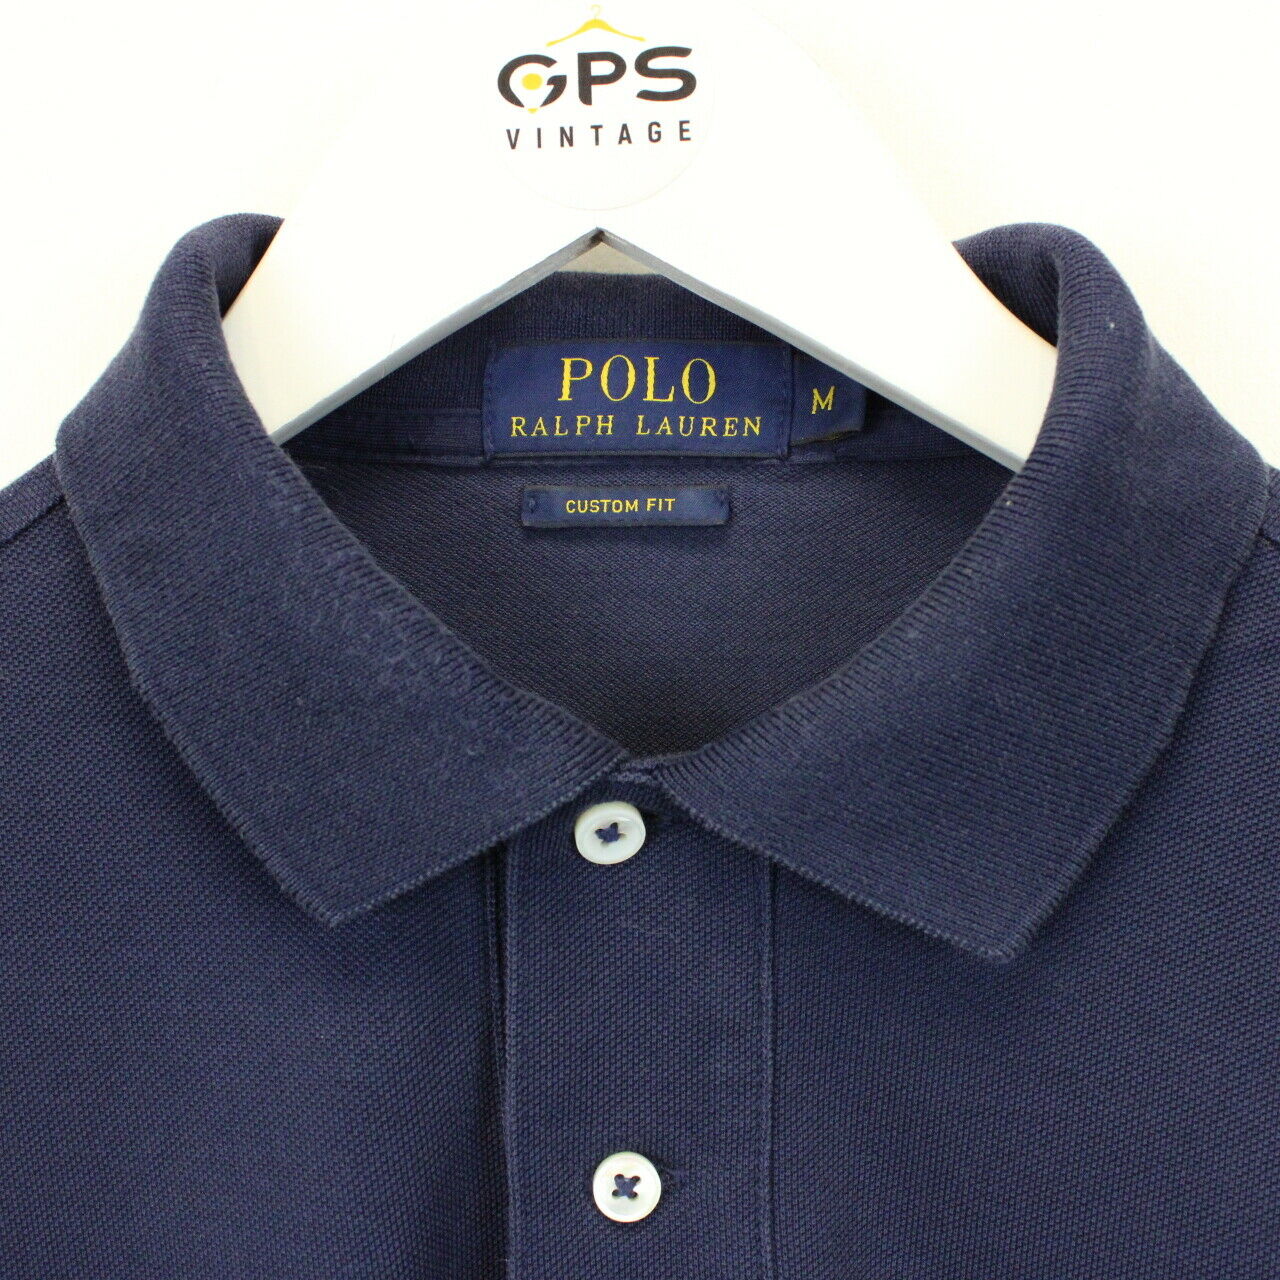 90s Polo Ralph Lauren Shirts CURHAM NAVY-